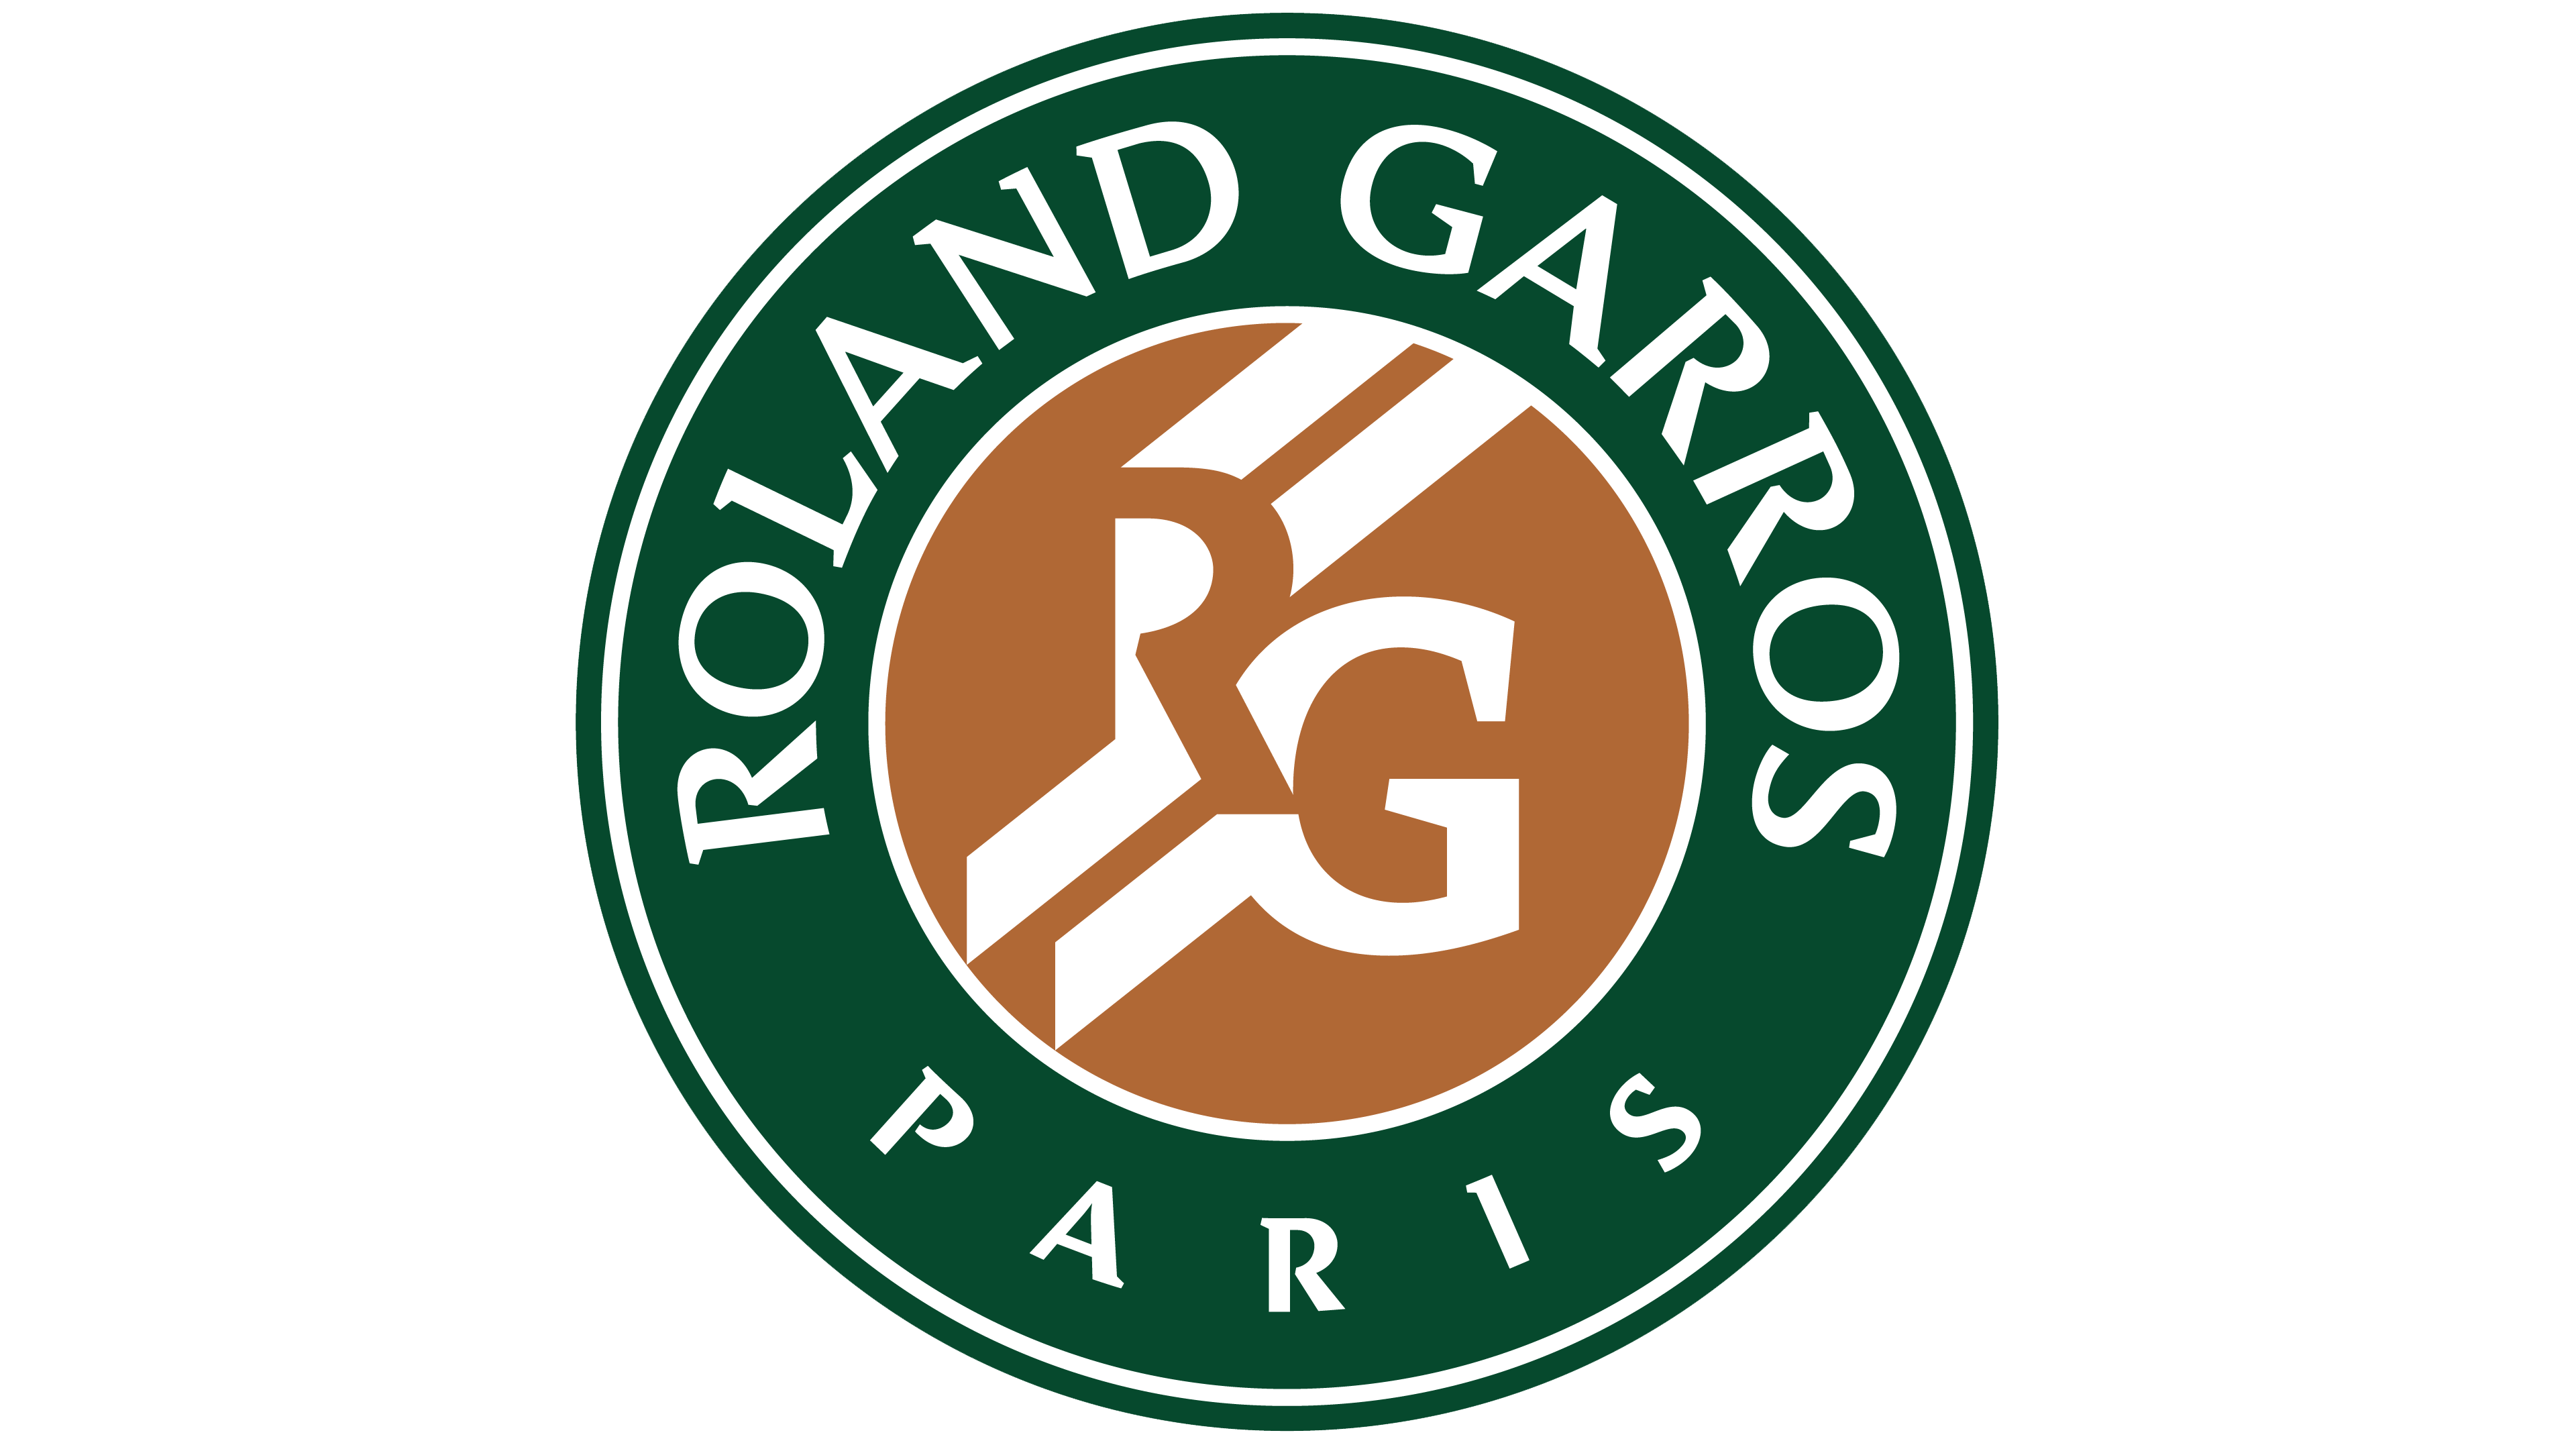 Roland Logo - Roland Garros logo History of the Team Name and emblem